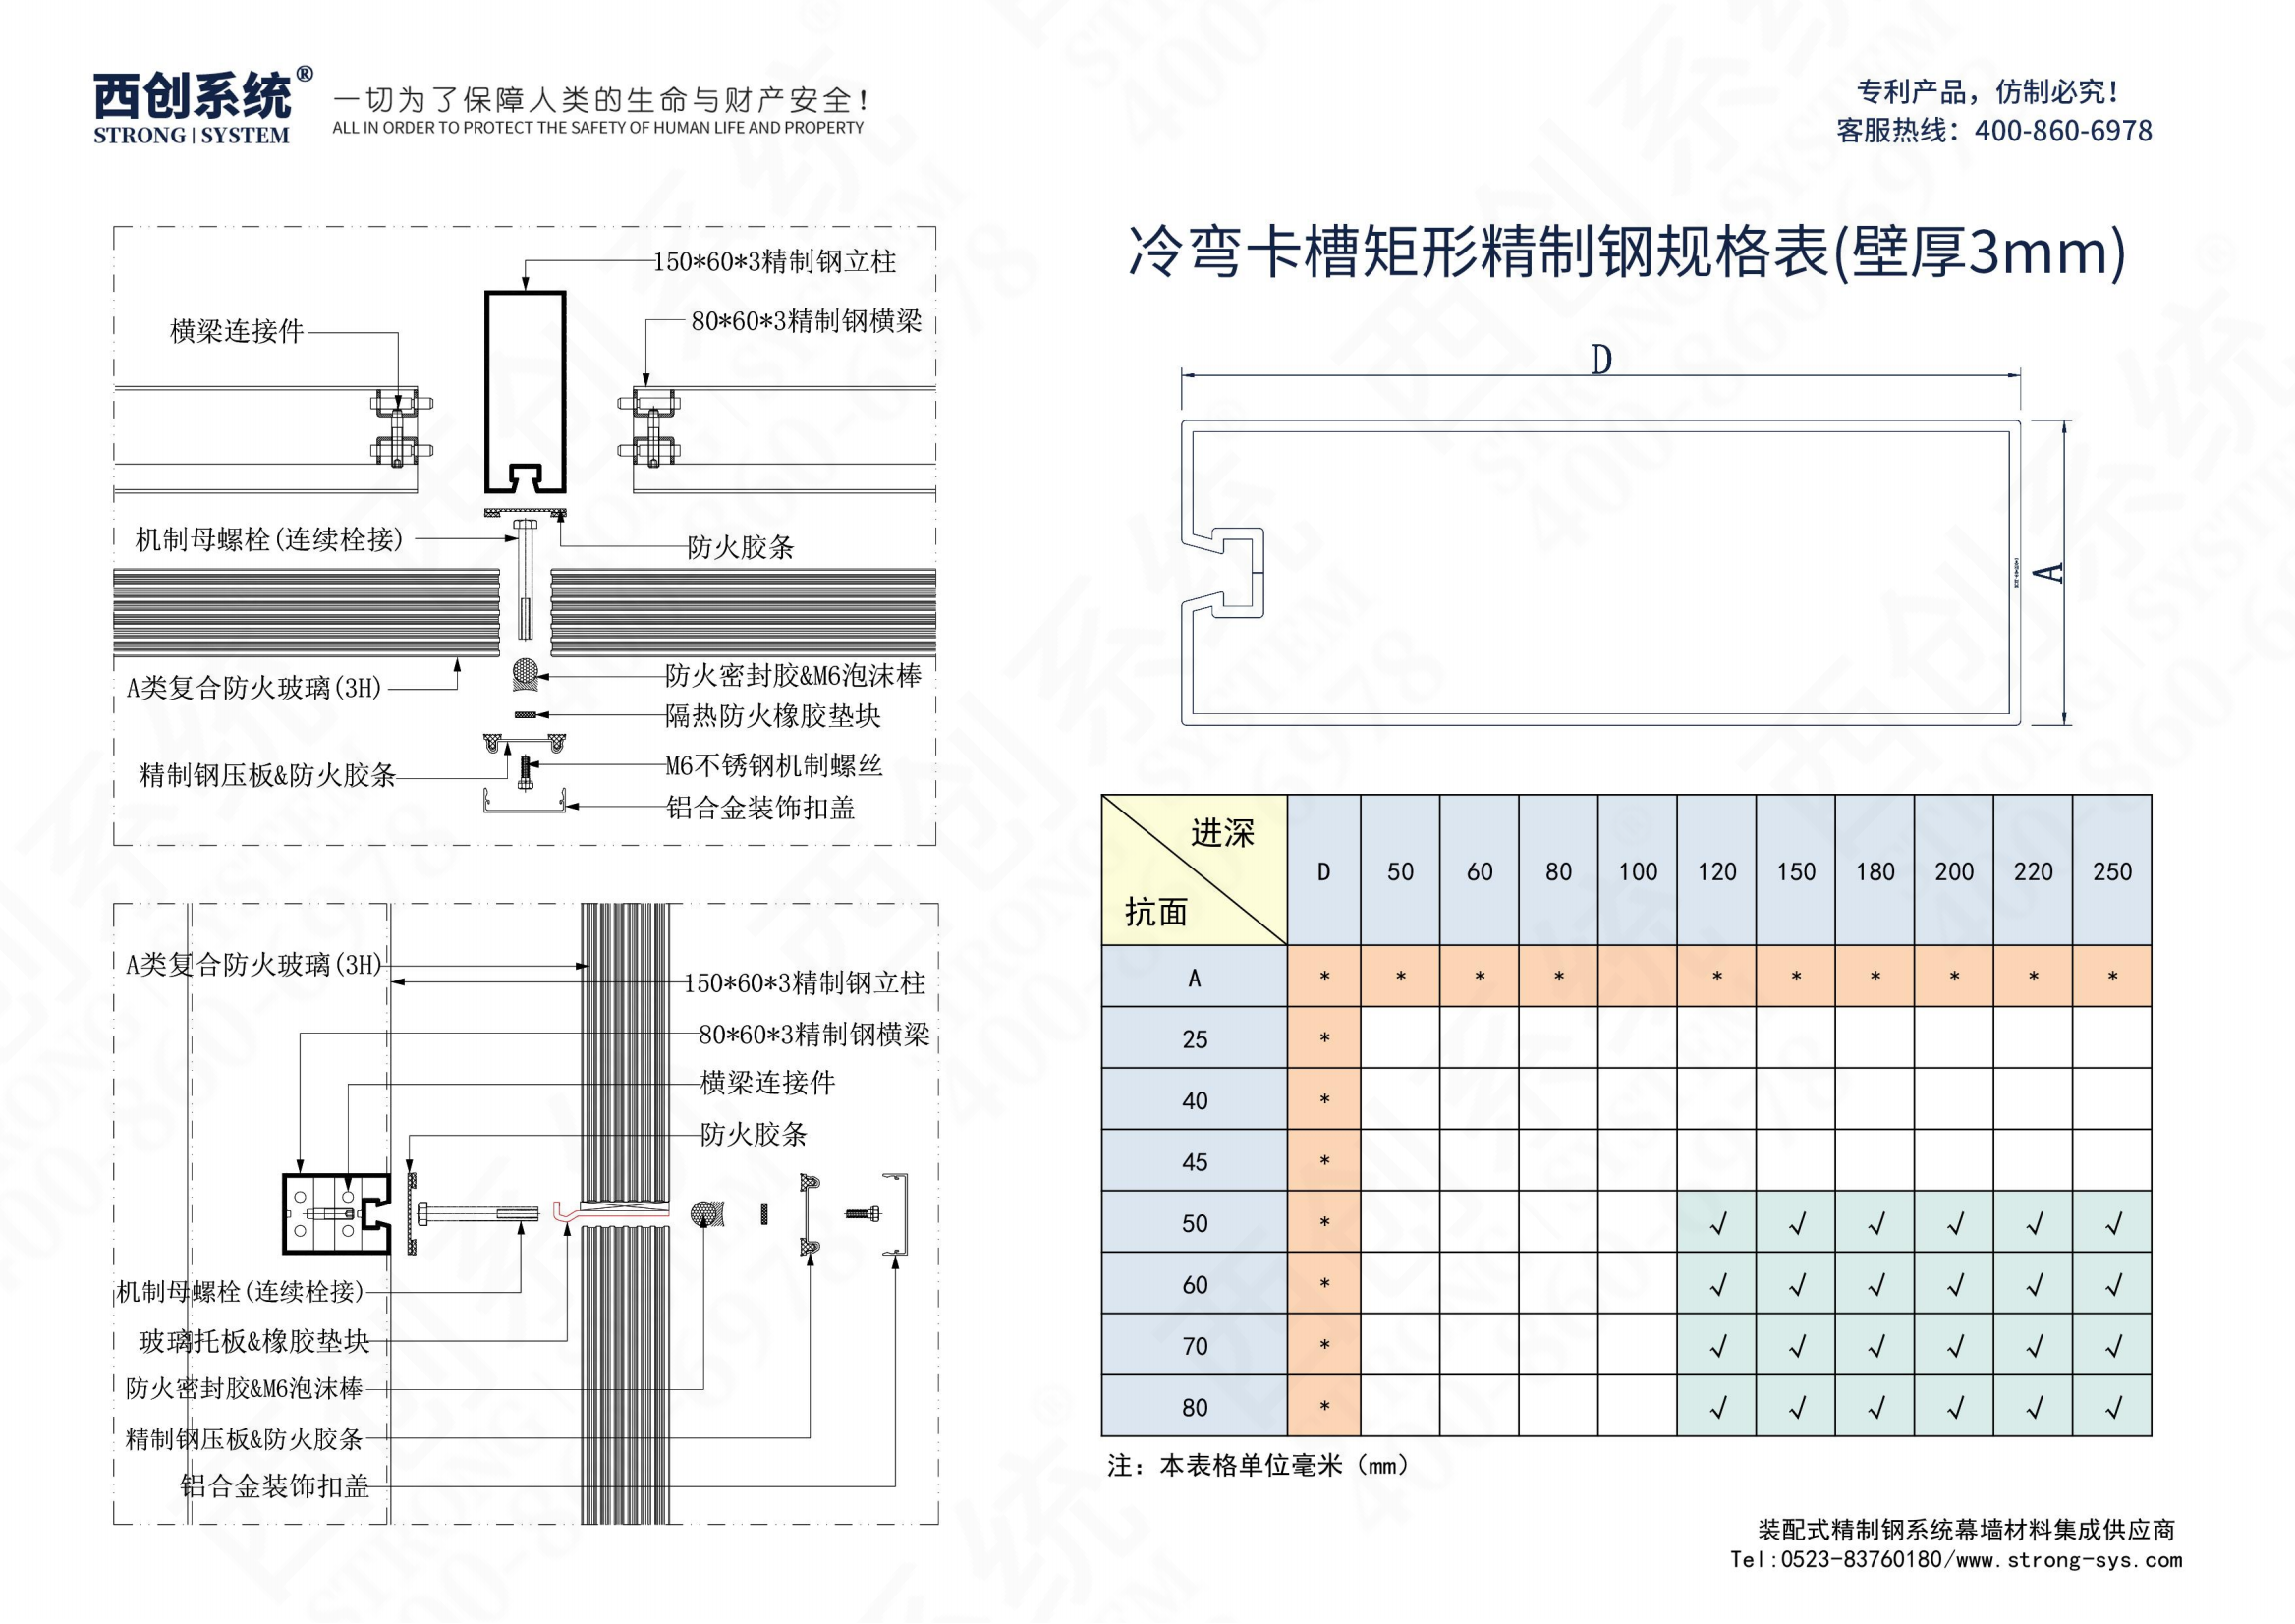 西创系统A类防火（2H）3mm精制钢玻璃幕墙系统(图12)